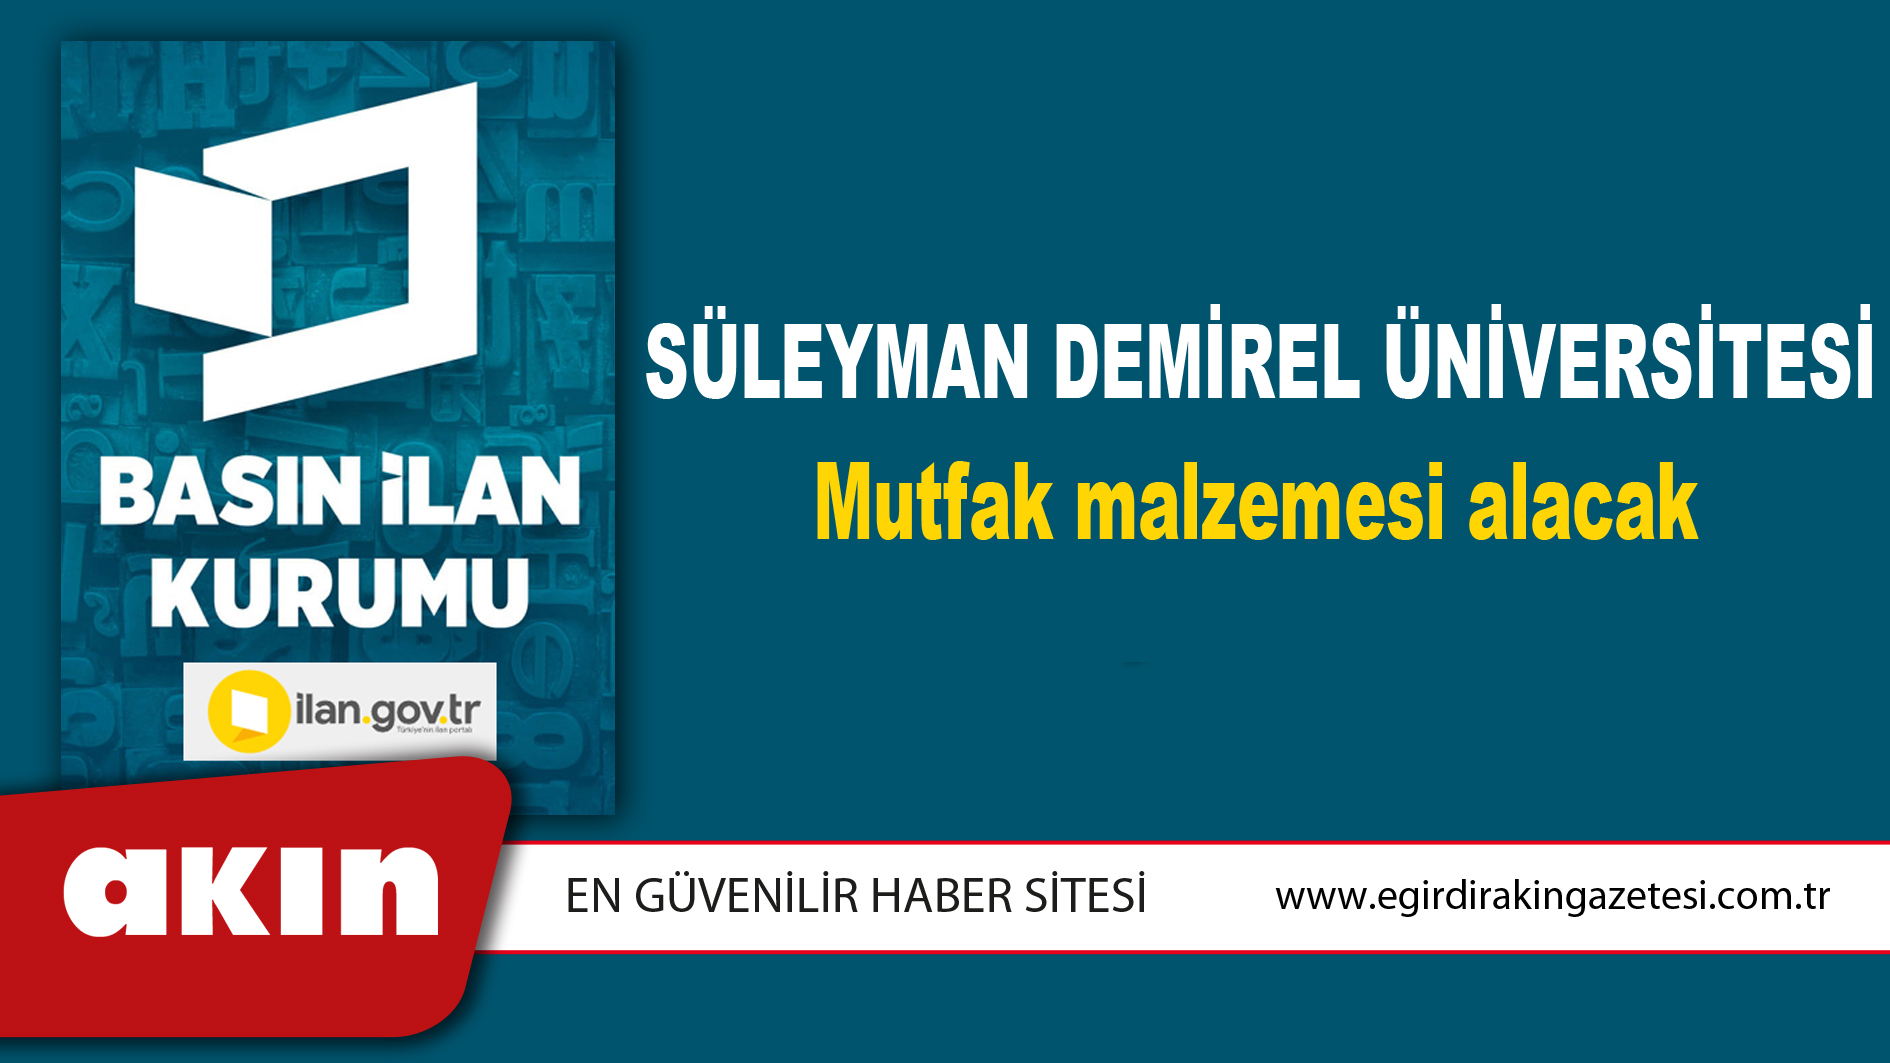 eğirdir haber,akın gazetesi,egirdir haberler,son dakika,Süleyman Demirel Üniversitesi Mutfak malzemesi alacak